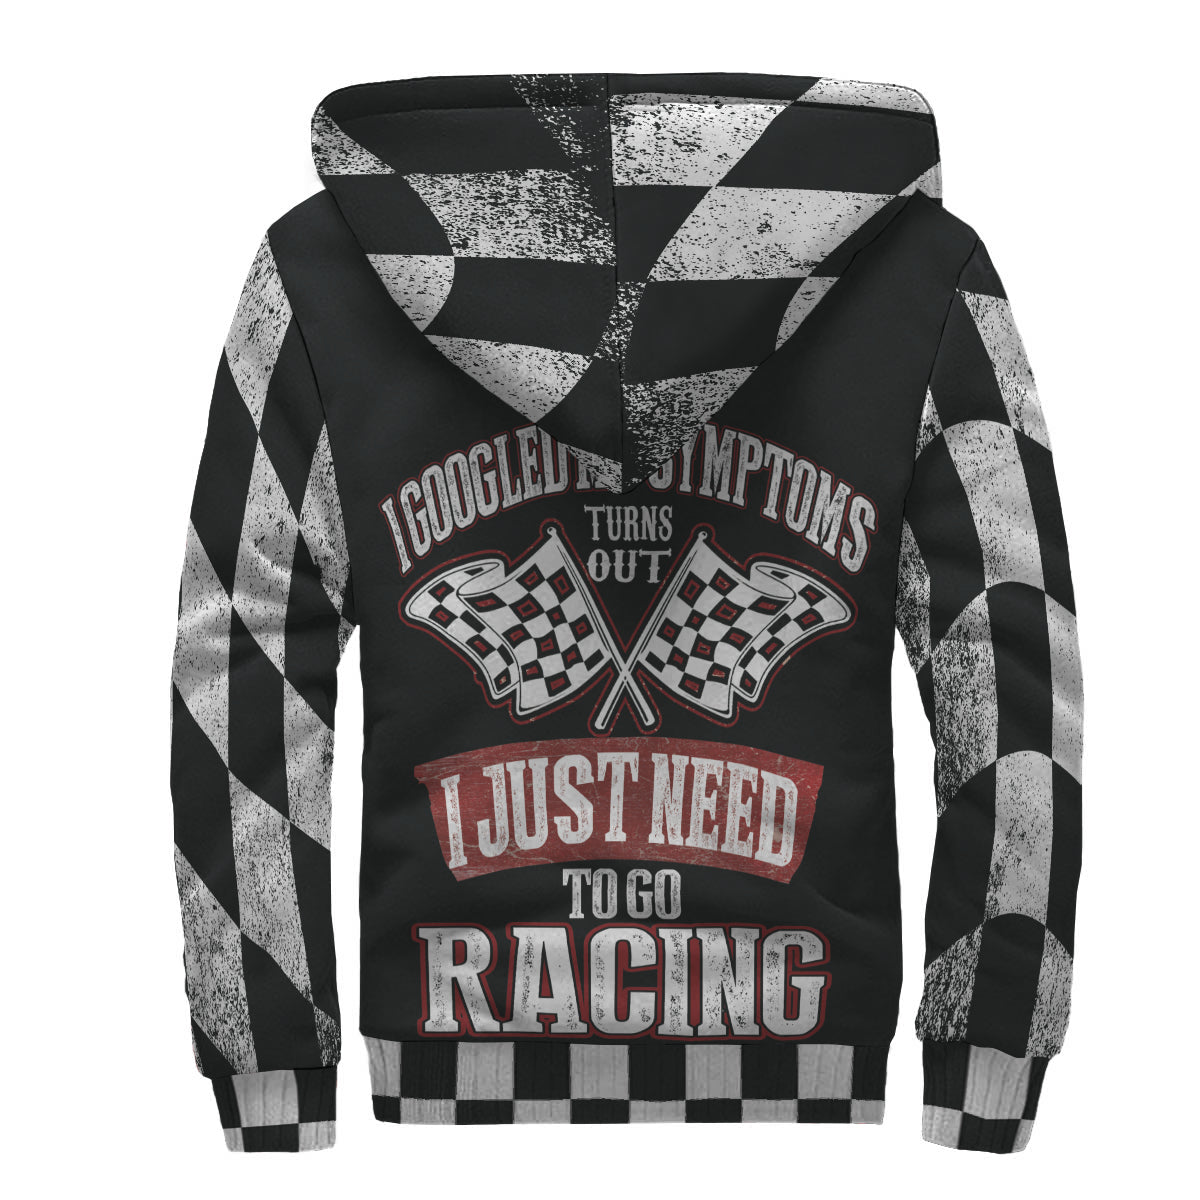 racing jacket